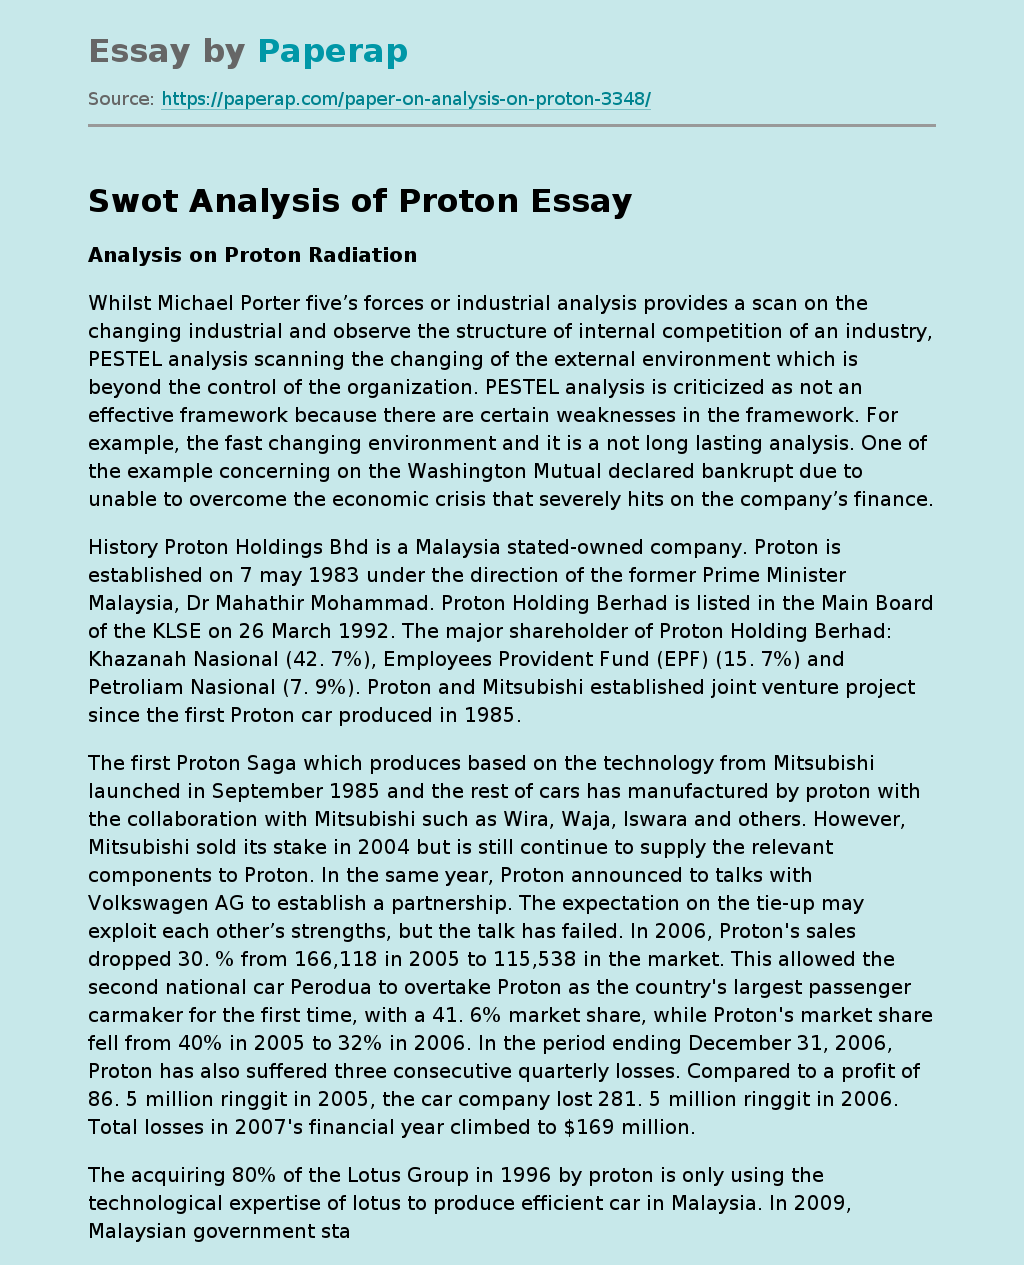 Swot Analysis of Proton